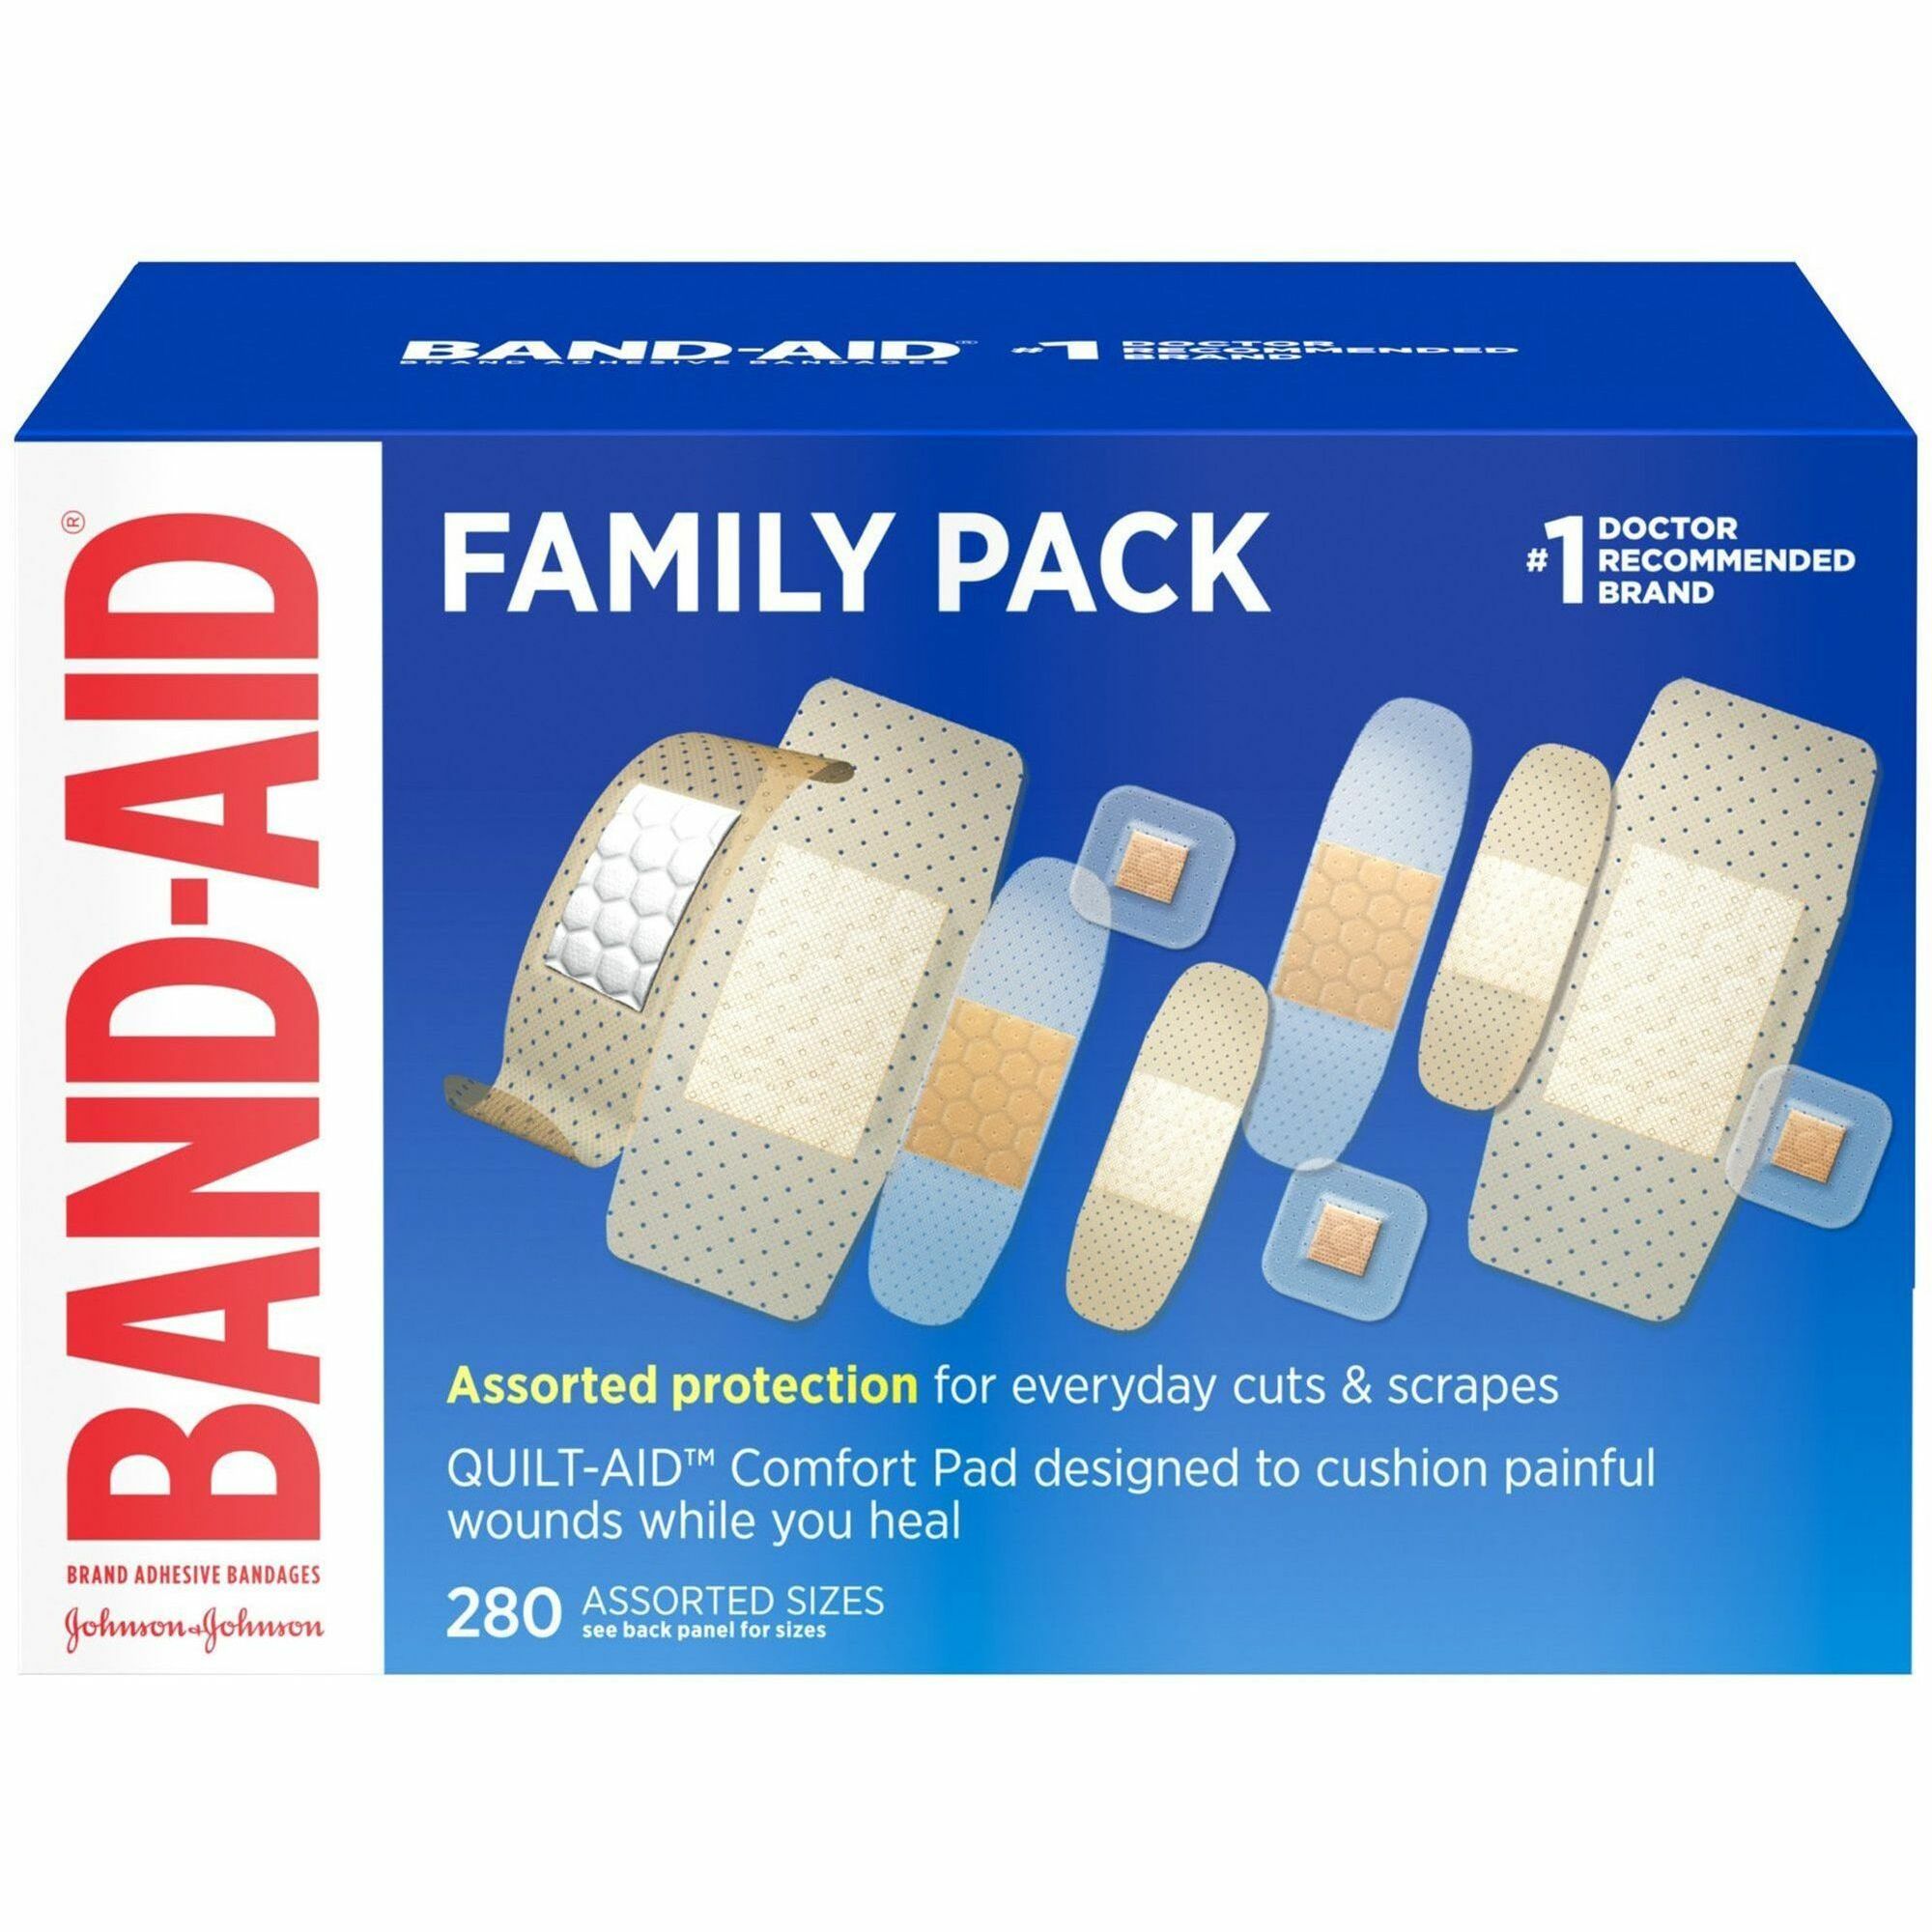 Imprinted Bandage Holder  Promotional Product Inc.